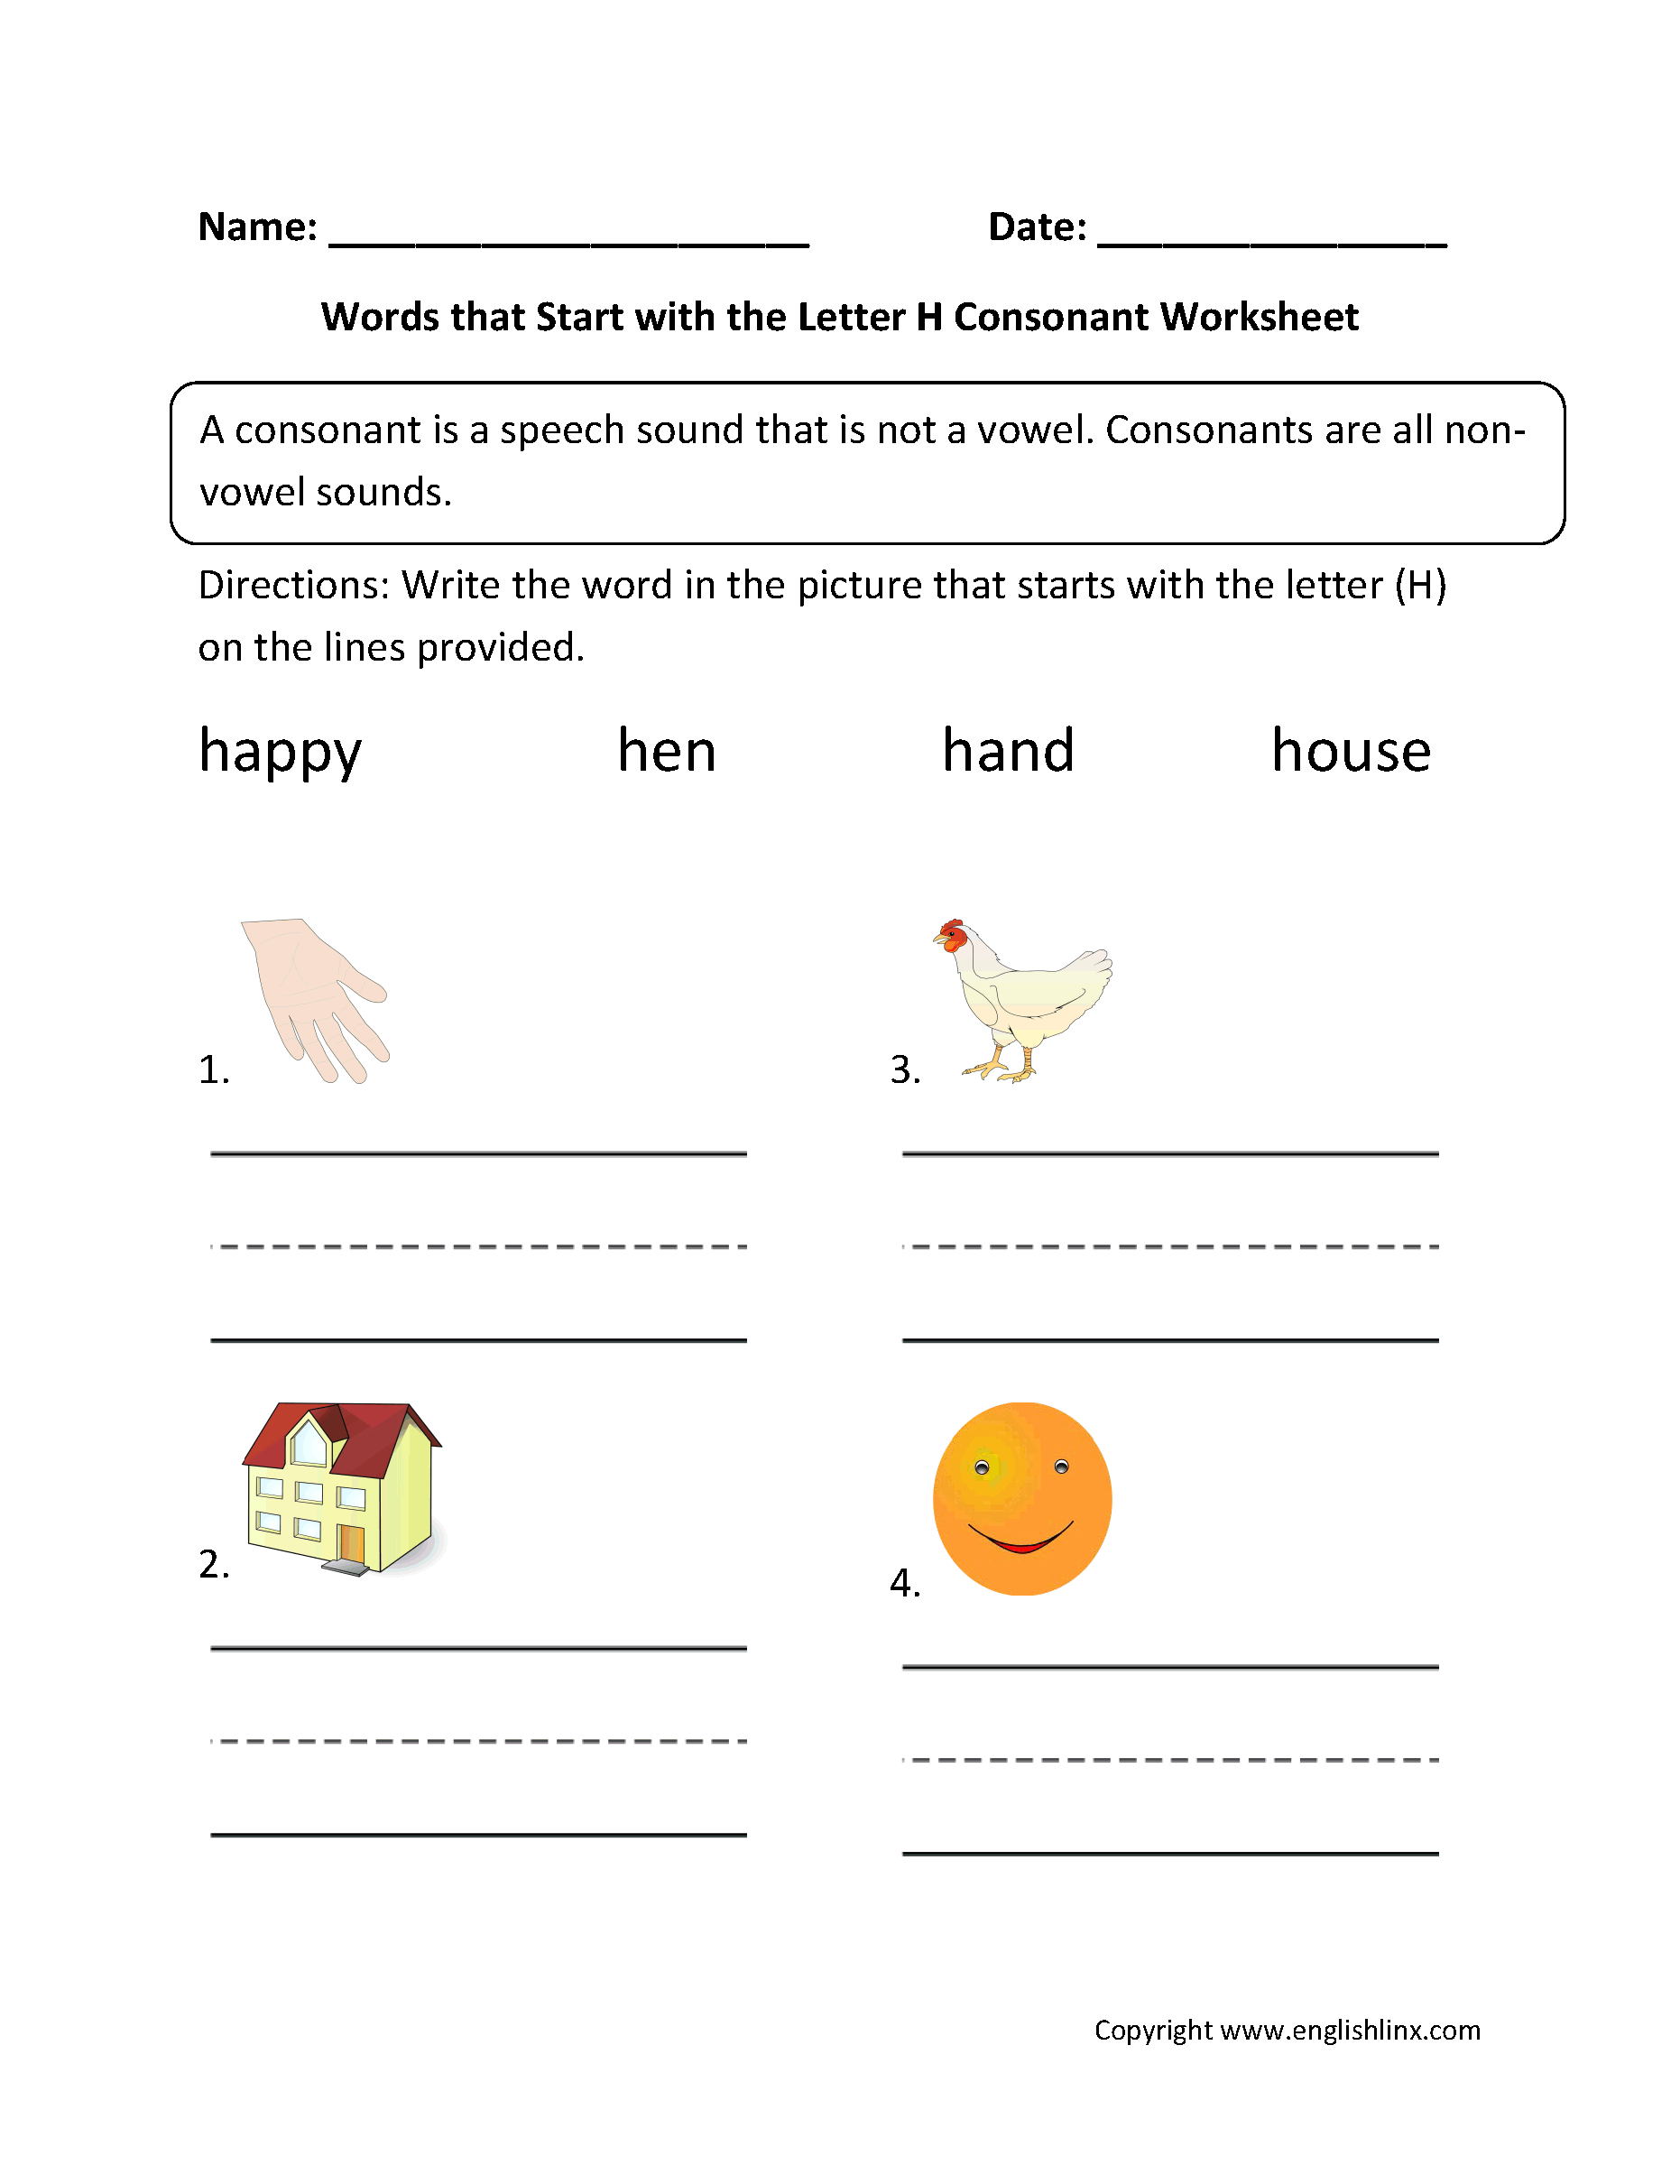 Words Start Letter H Consonant Worksheets